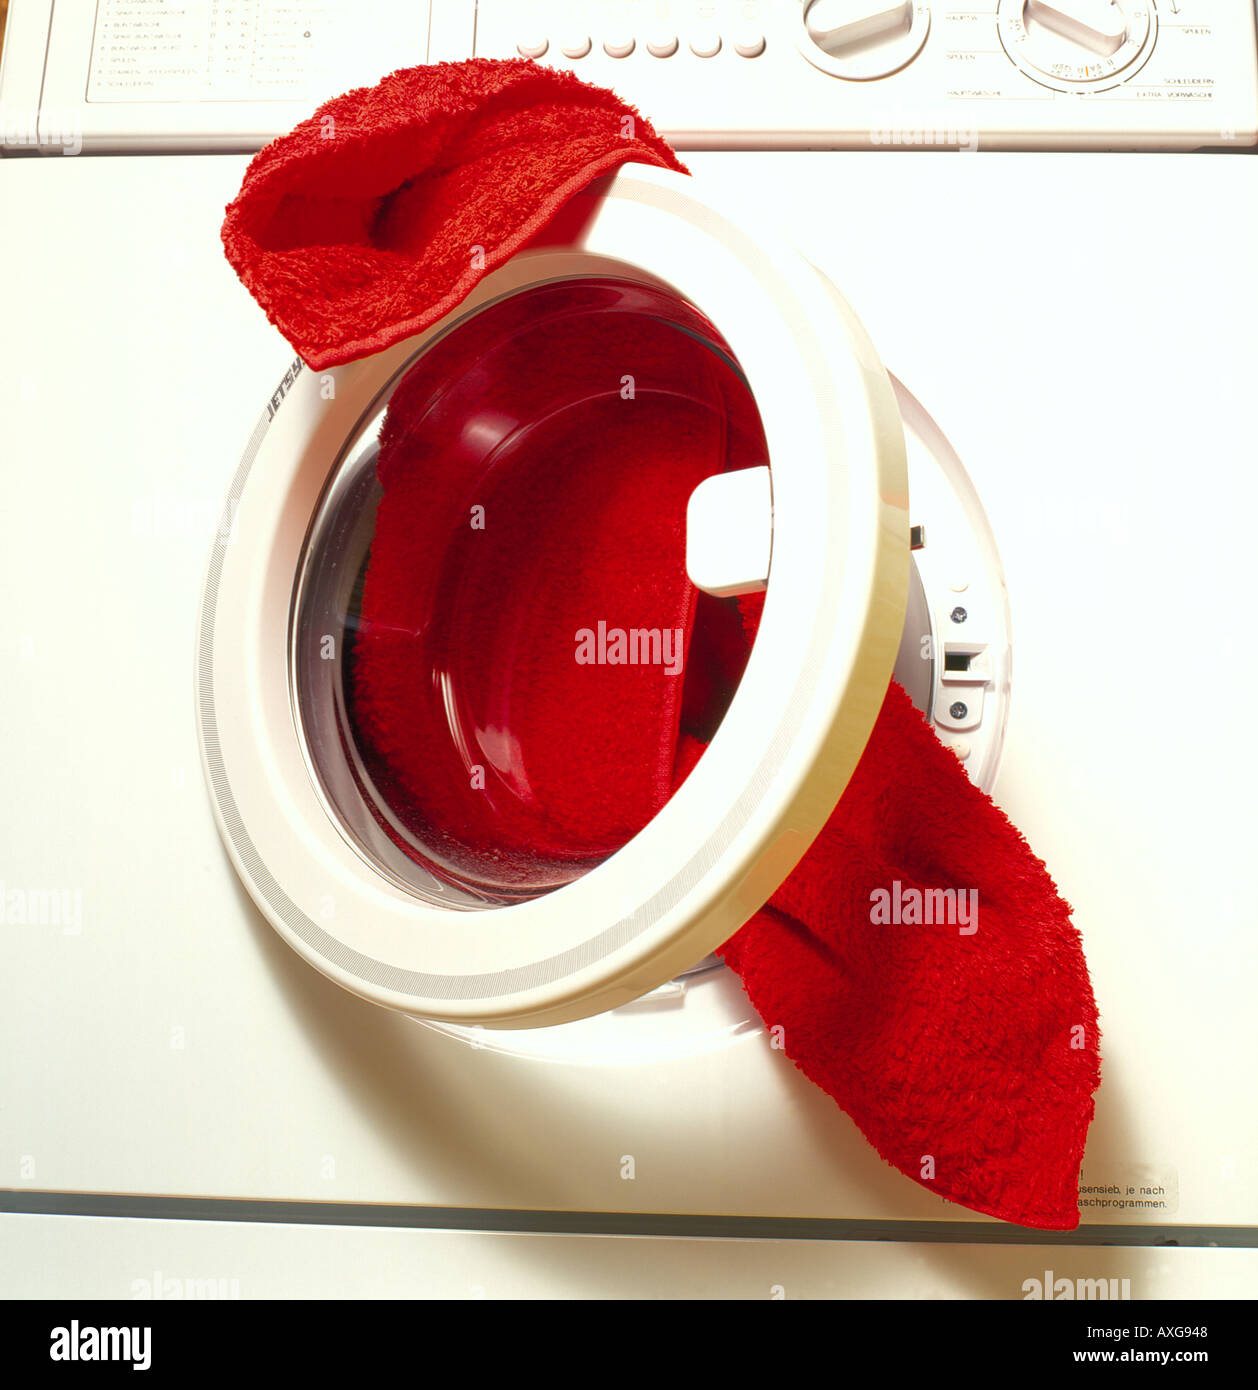 Vorderseite des eine Waschmaschine Loeaded mit roten Handtuch Foto von Willy Matheisl Stockfoto